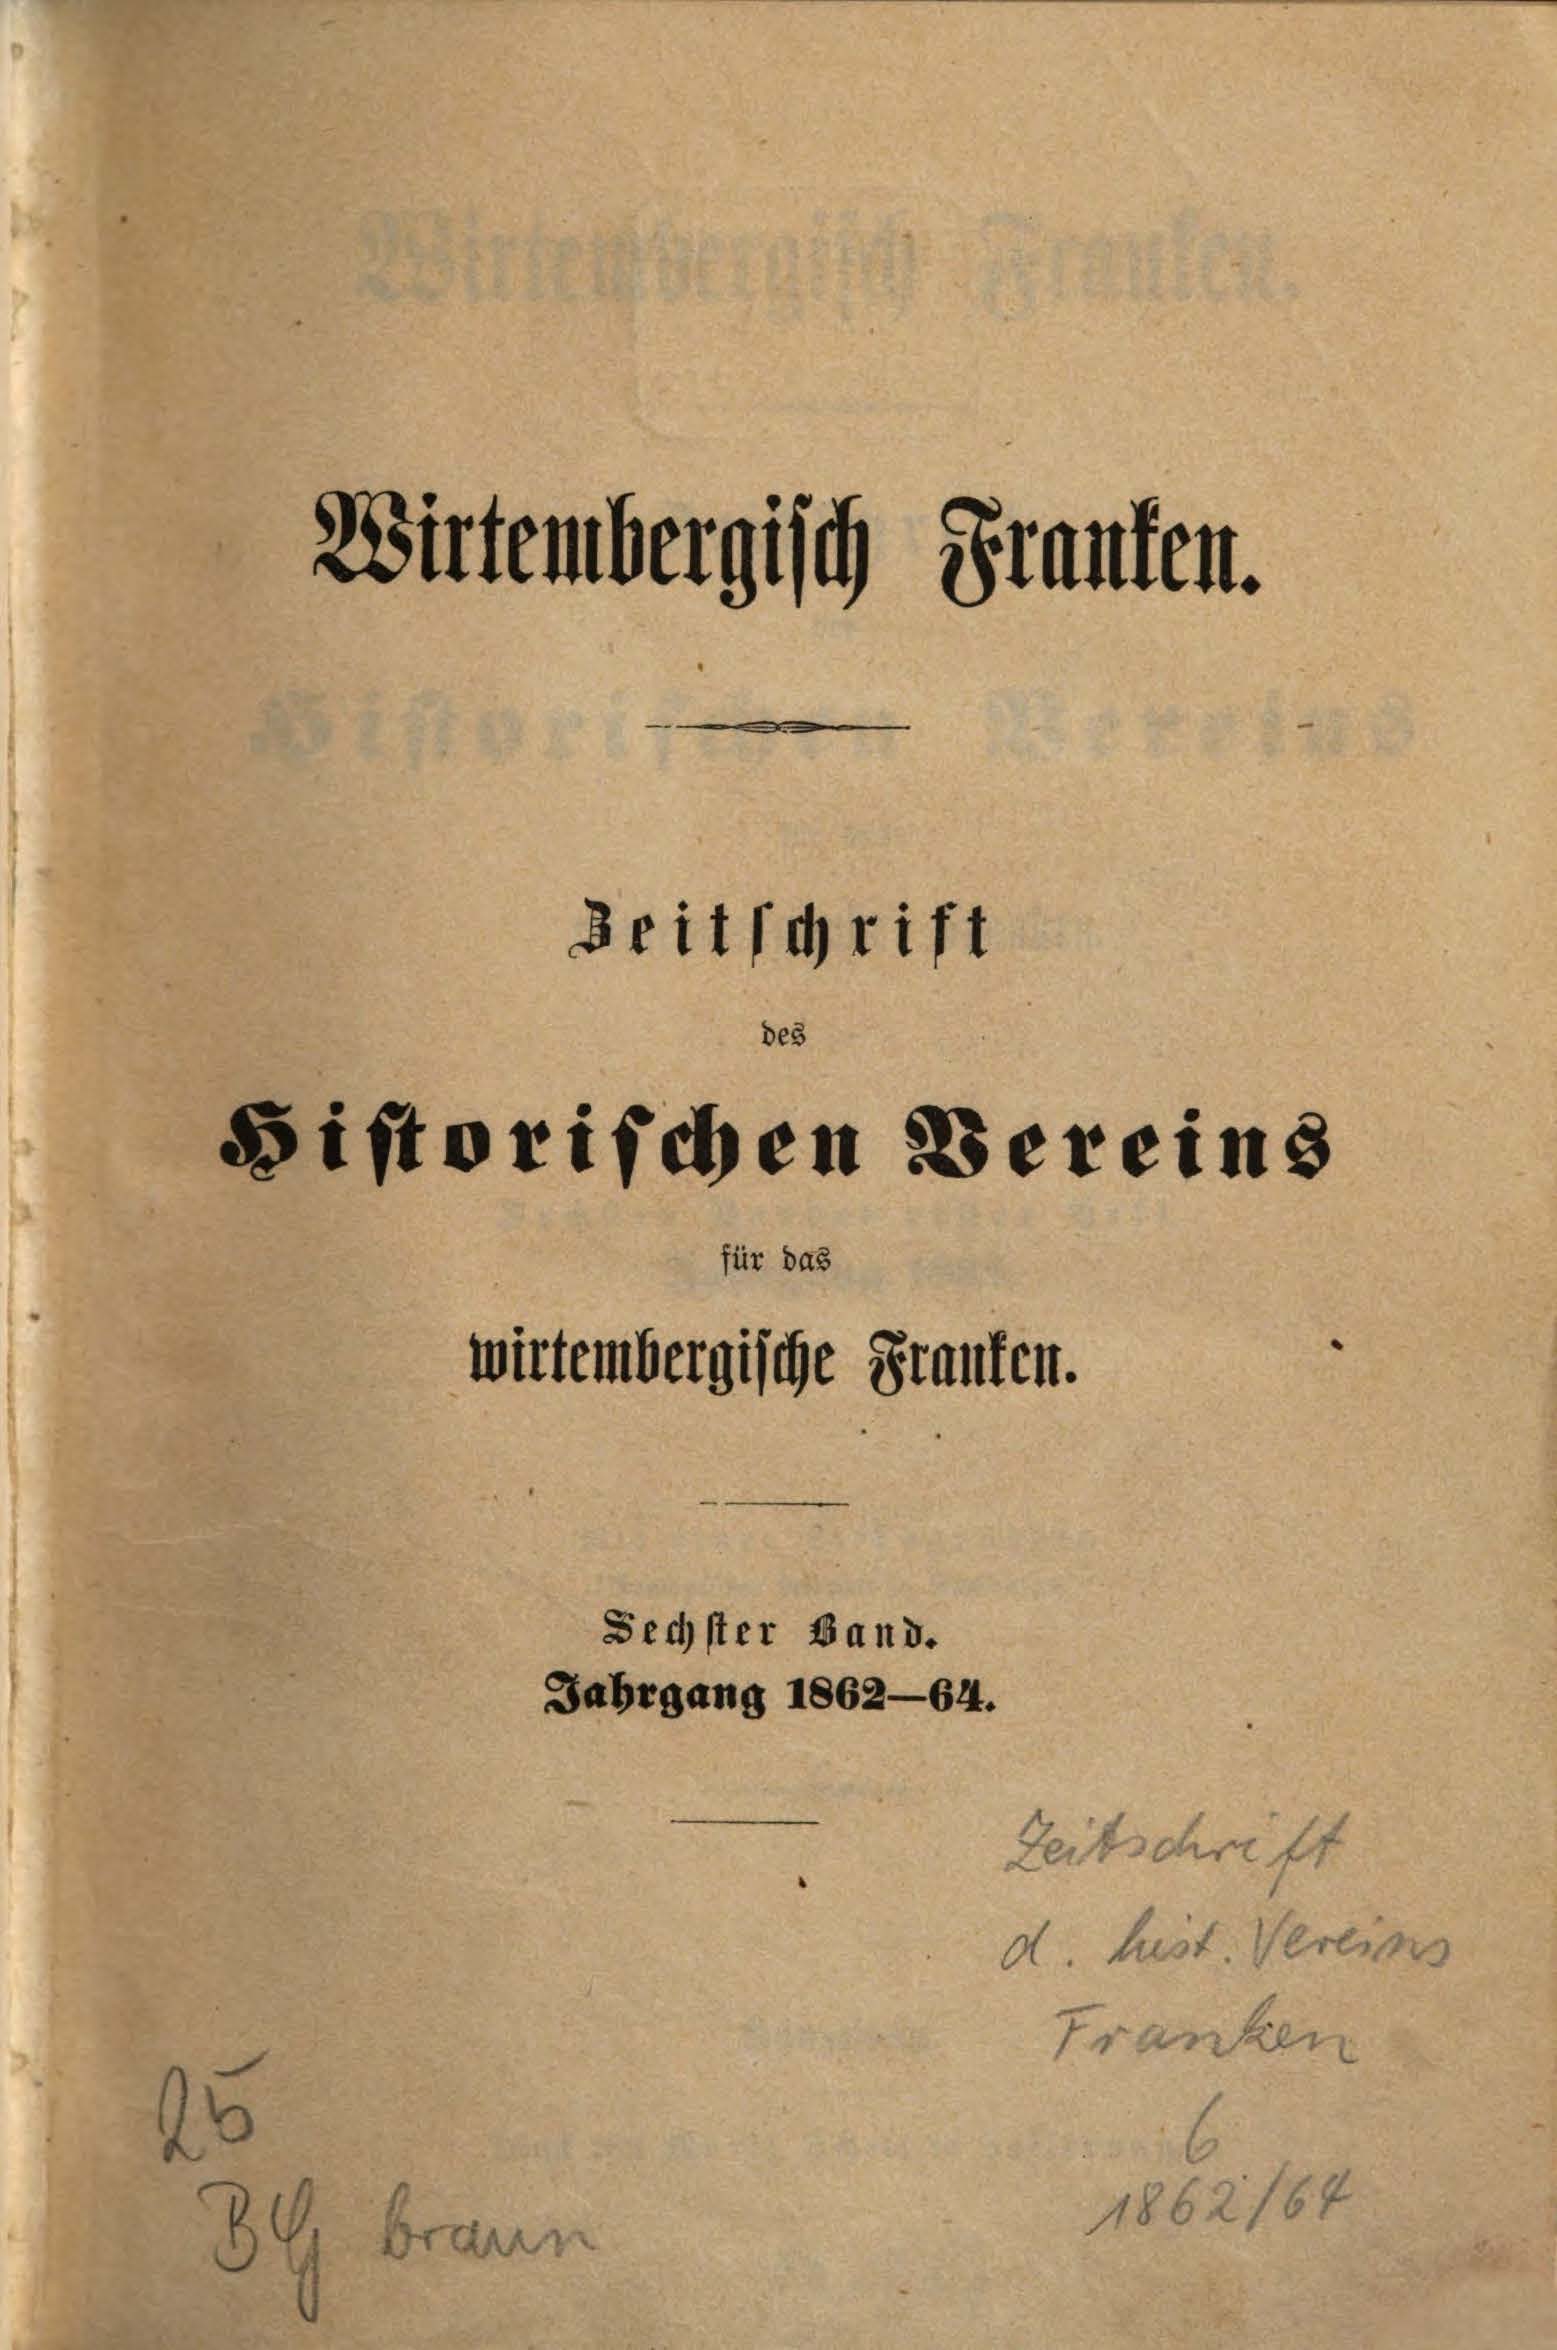 Zeitschrift des Historischen Vereins für das württembergische Franken Cover